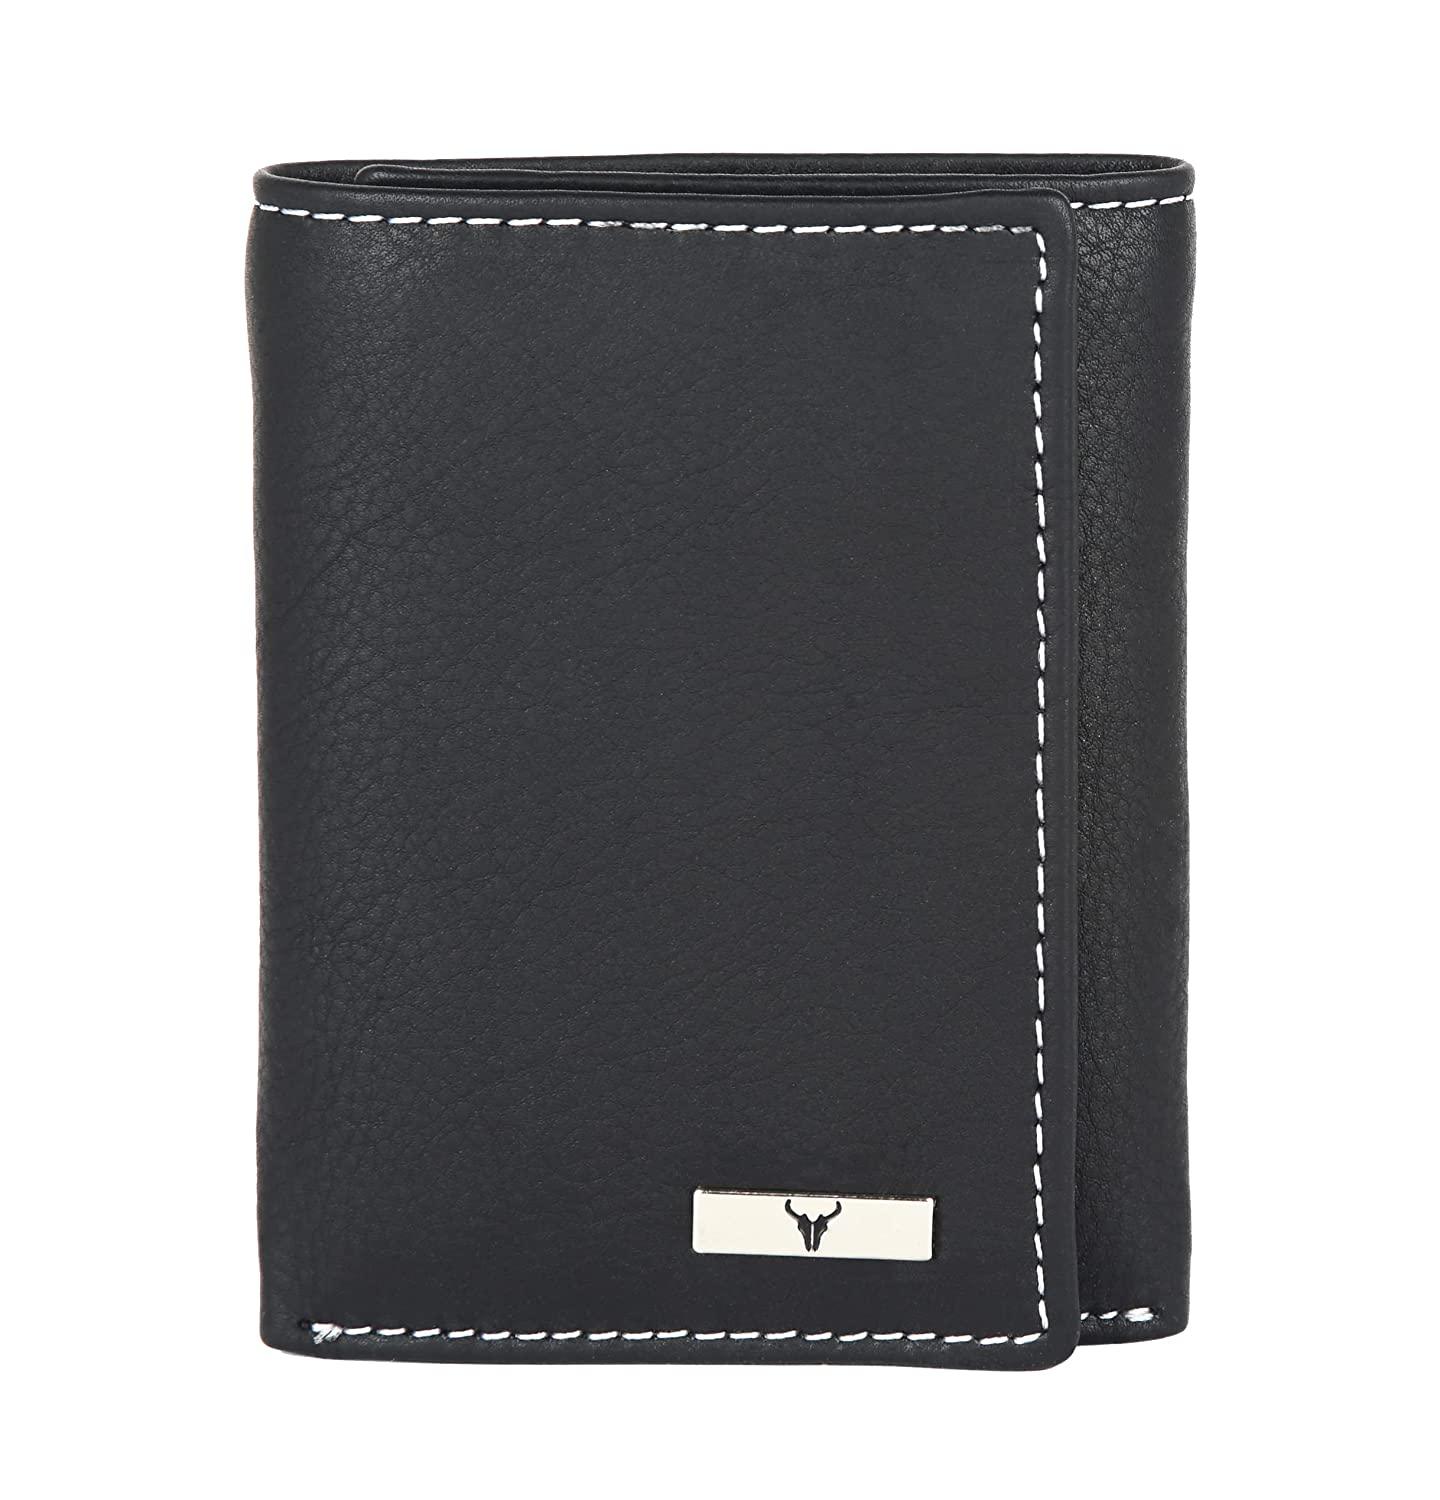 NAPA HIDE Leather Wallet for Men – WILDHORN